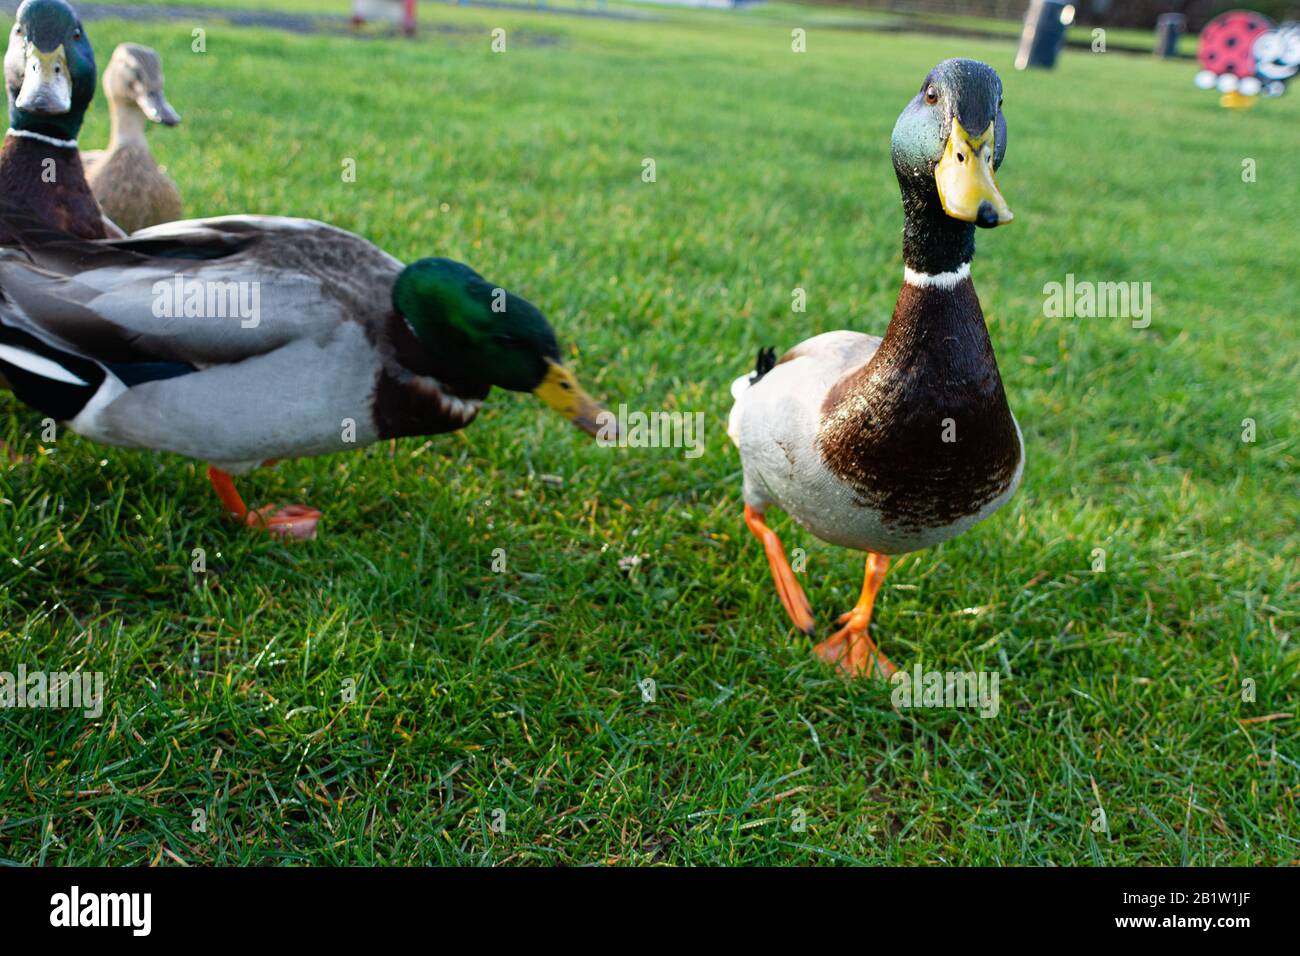 Mallard ducks in disagreement Stock Photo